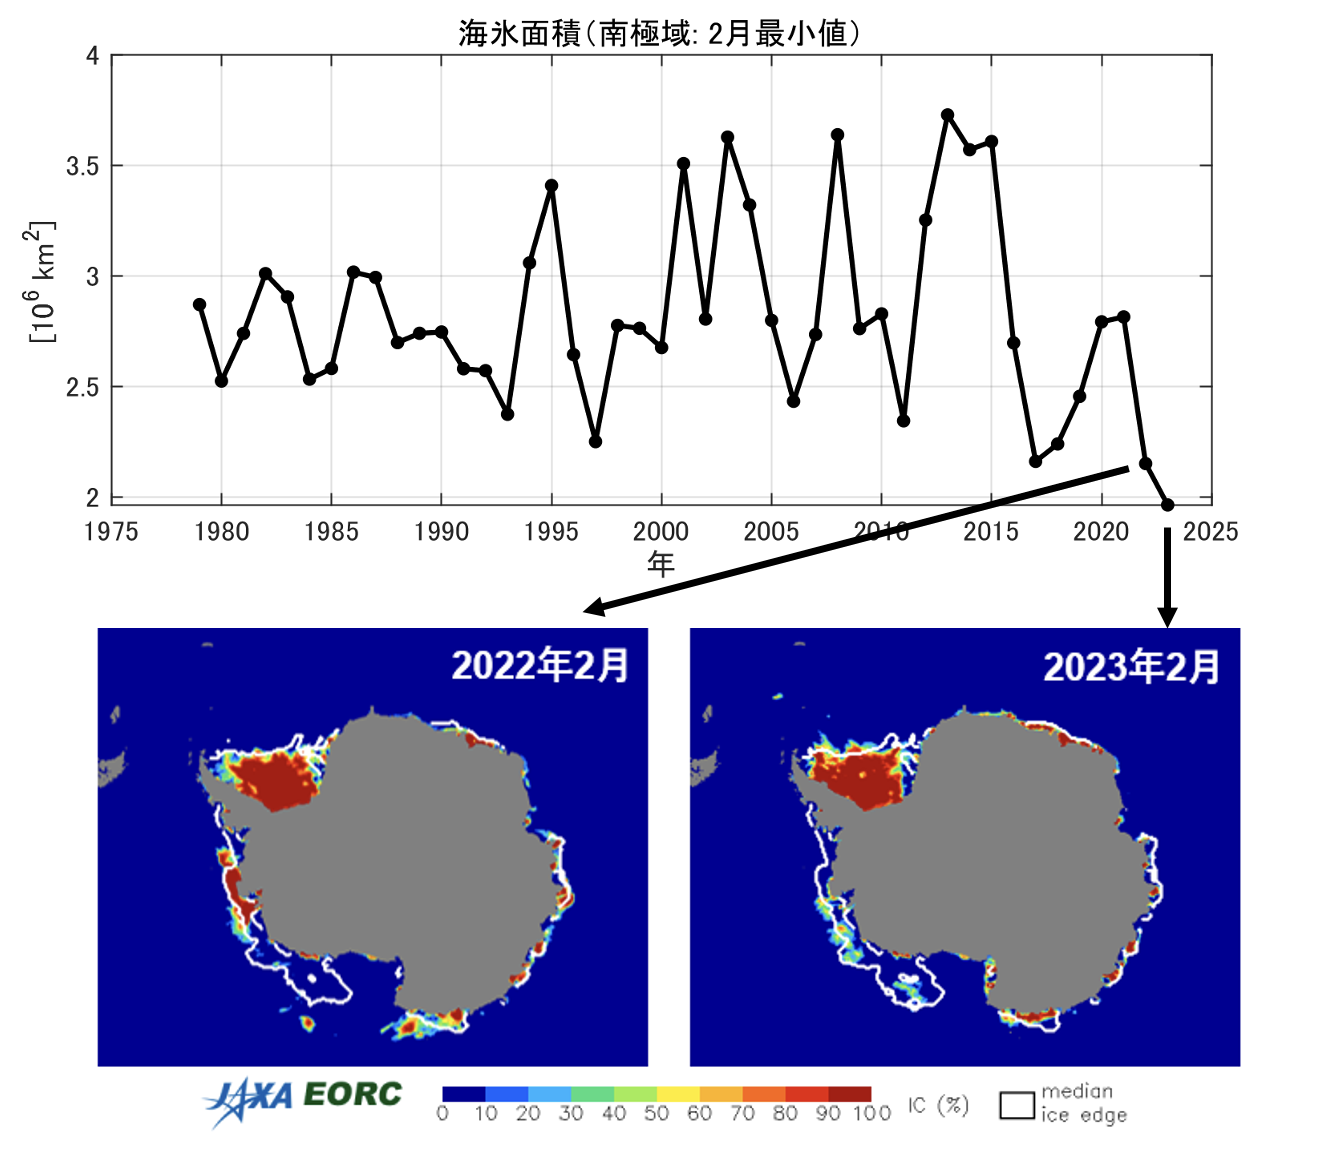 上：南極域の海氷面積の年最小値の推移
						下：海氷面積の過去最小を引き続いて更新した2022年と2023年の2月に
						AMSR2が観測した海氷密接度分布
						